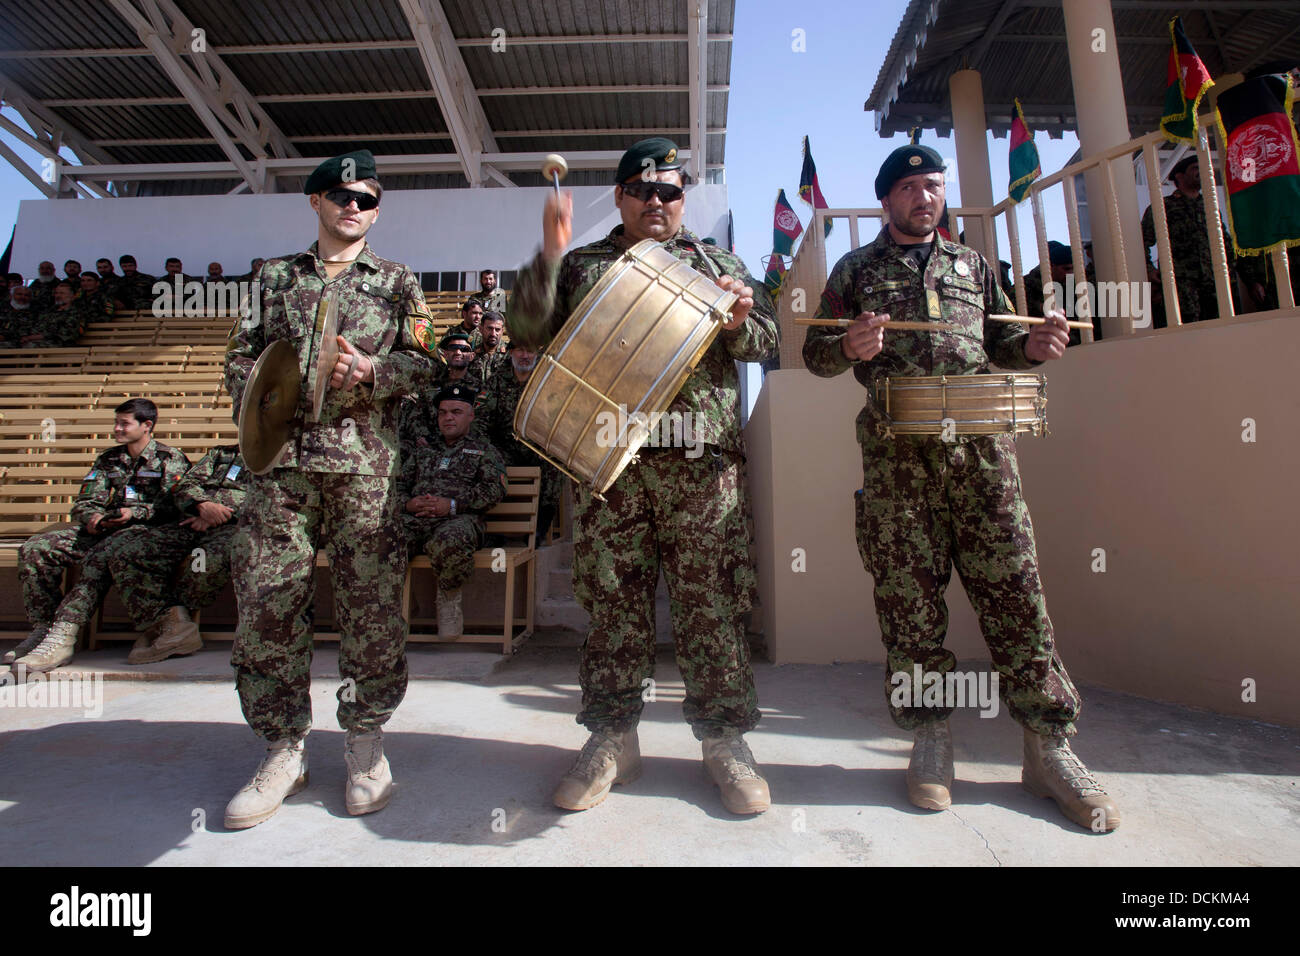 Banda del Ejército Nacional afgano se reproduce durante las celebraciones del Día de la independencia de Afganistán el 19 de agosto de 2013 en el campamento Shorabak, provincia de Helmand, Afganistán. Foto de stock